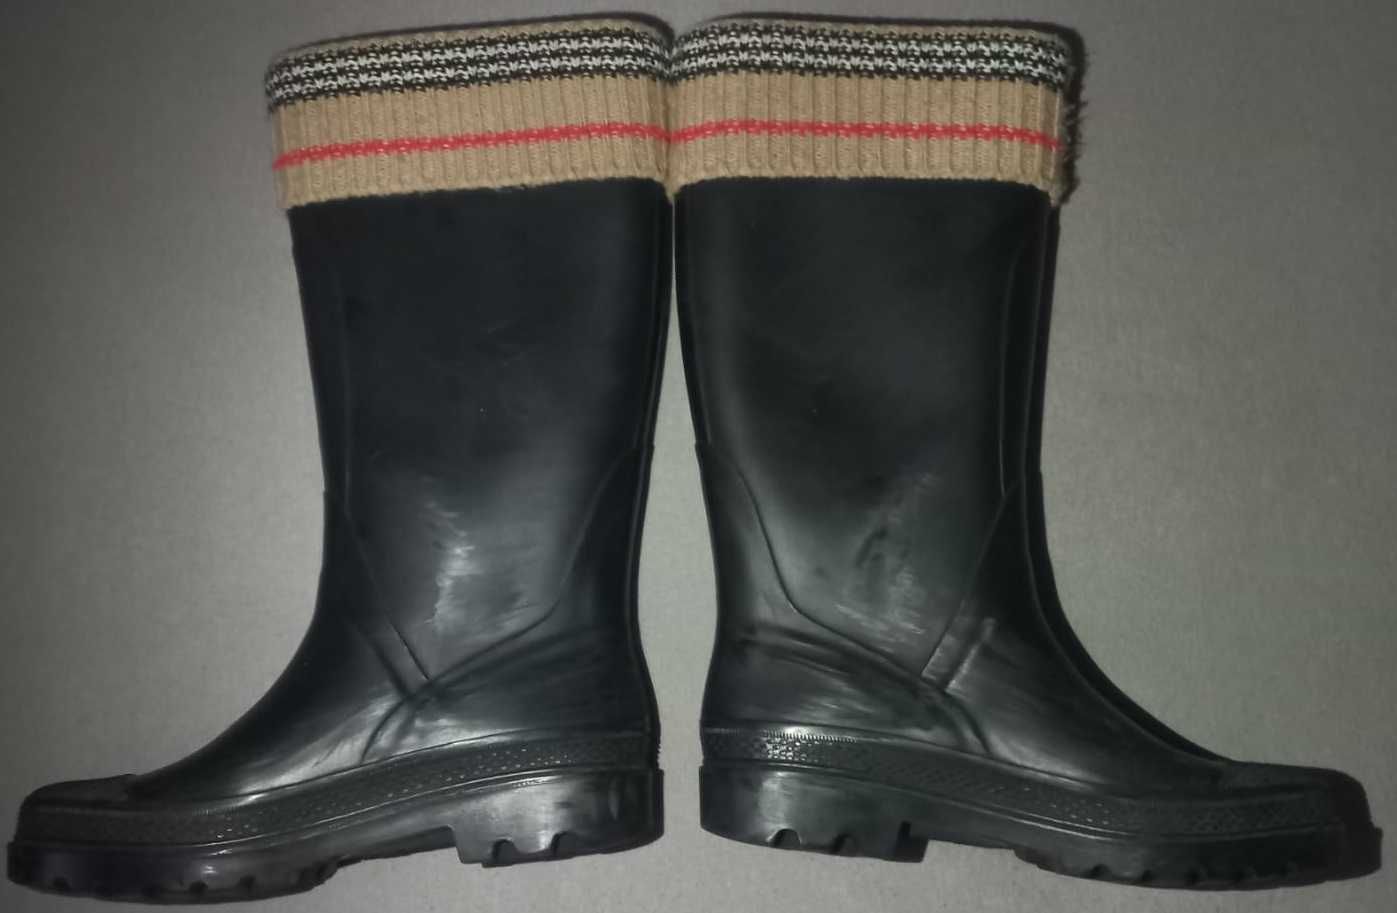 Burberry ghete/boots for/pentru women/ femei marimea 38 EU ieftine!